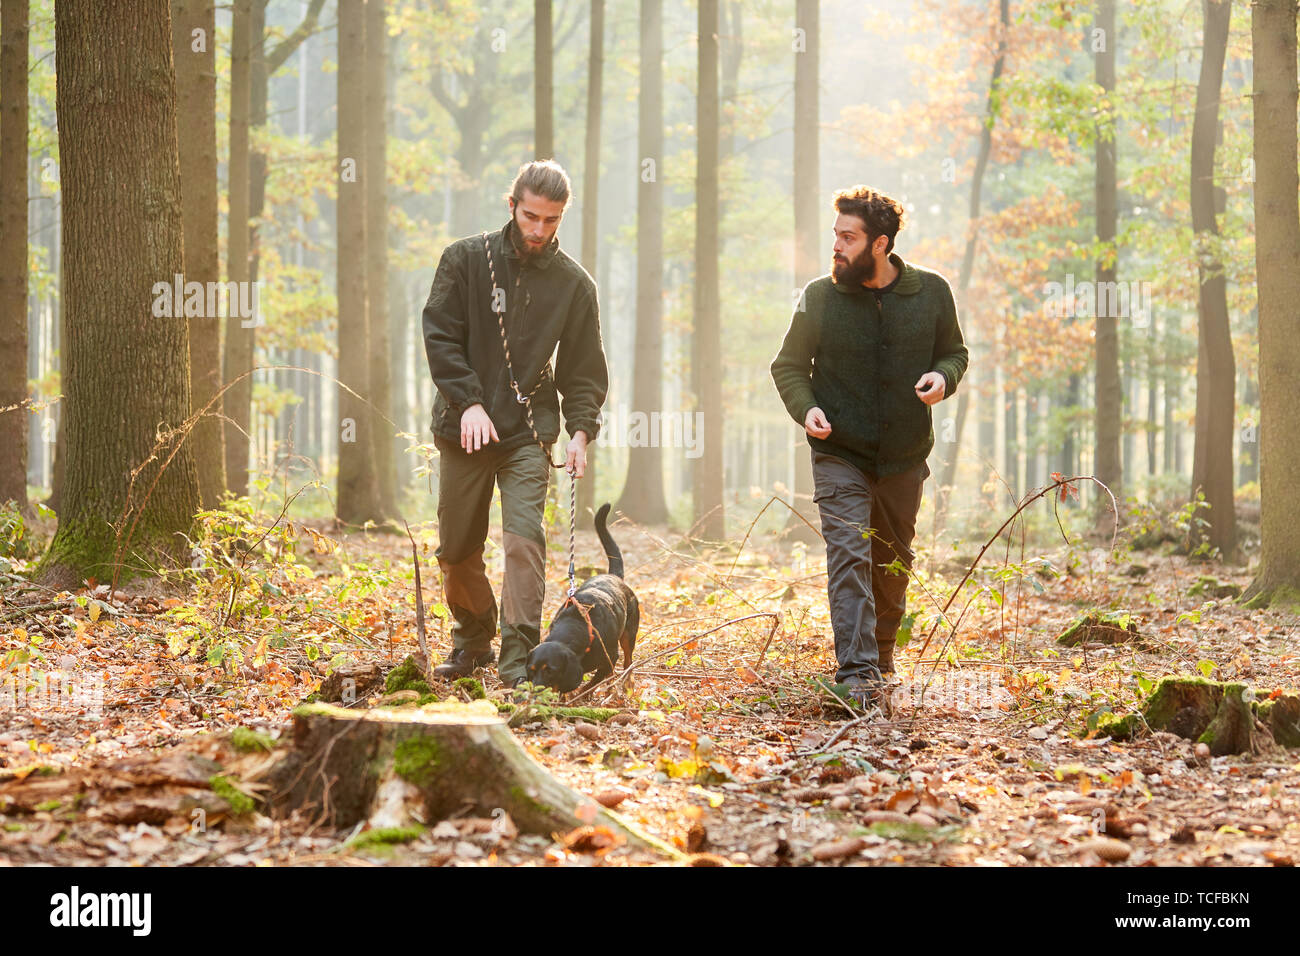 Deux chasseurs ou les forestiers avec un chien comme un chien de chasse sur une promenade dans la forêt Banque D'Images